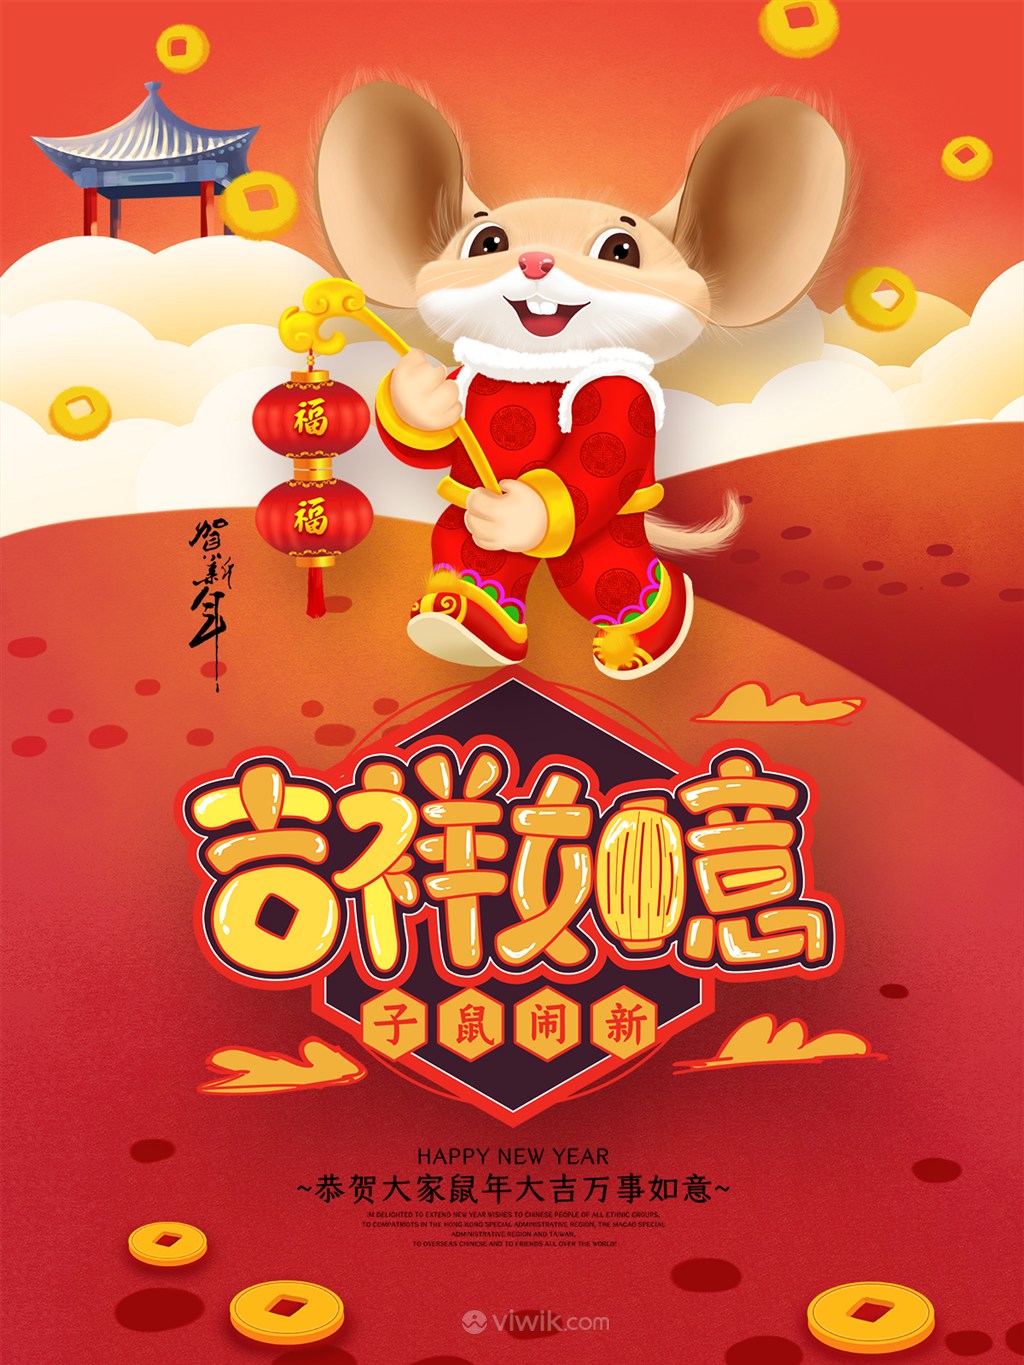 吉祥如意子鼠闹新春节海报